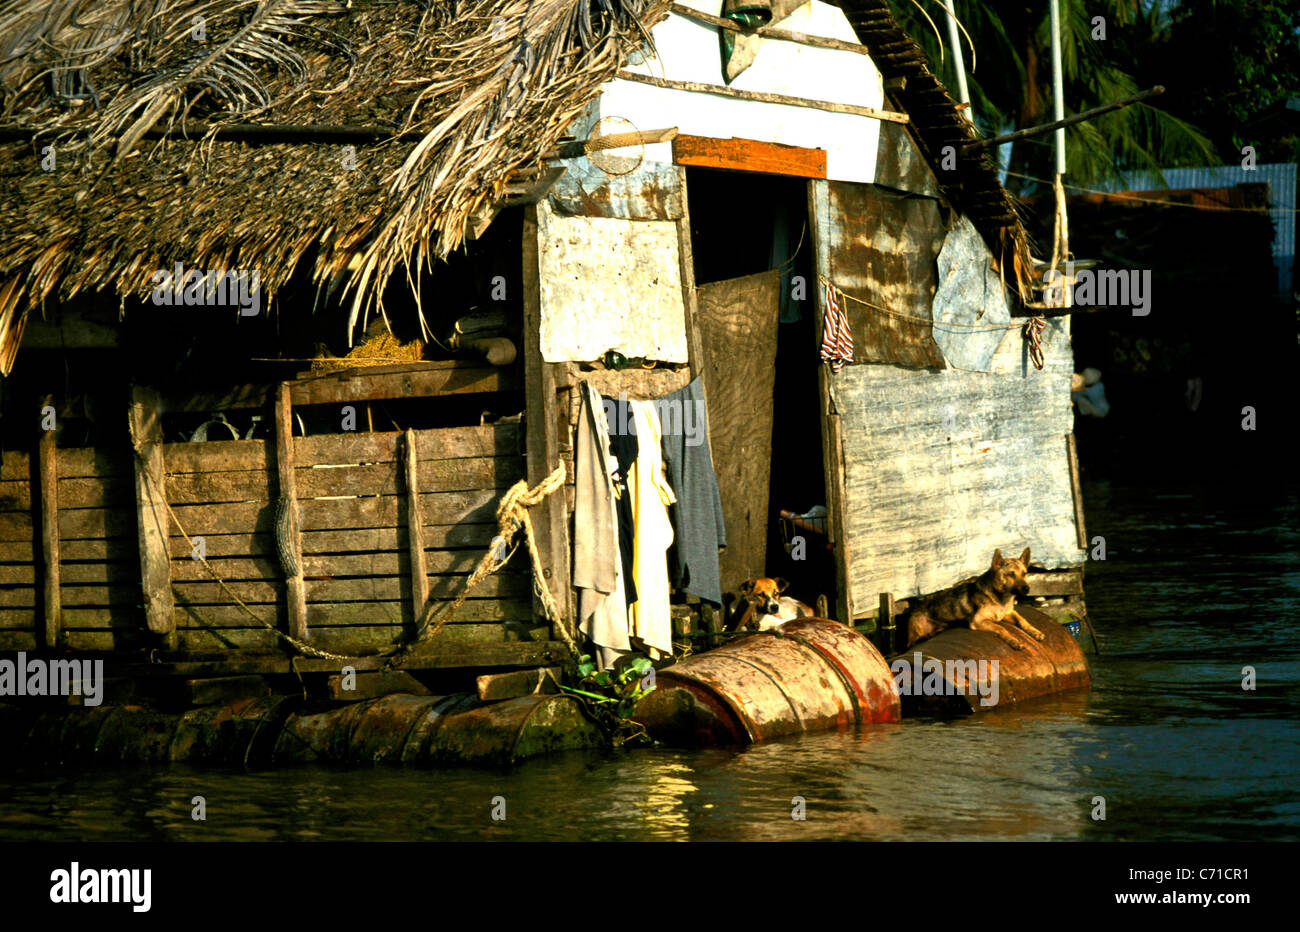 Il cane si siede sul tuccurbox... un vietnamita eco del folk australiano storia, visto in una casa galleggiante nel Delta del Mekong, vicino a Can Tho Foto Stock